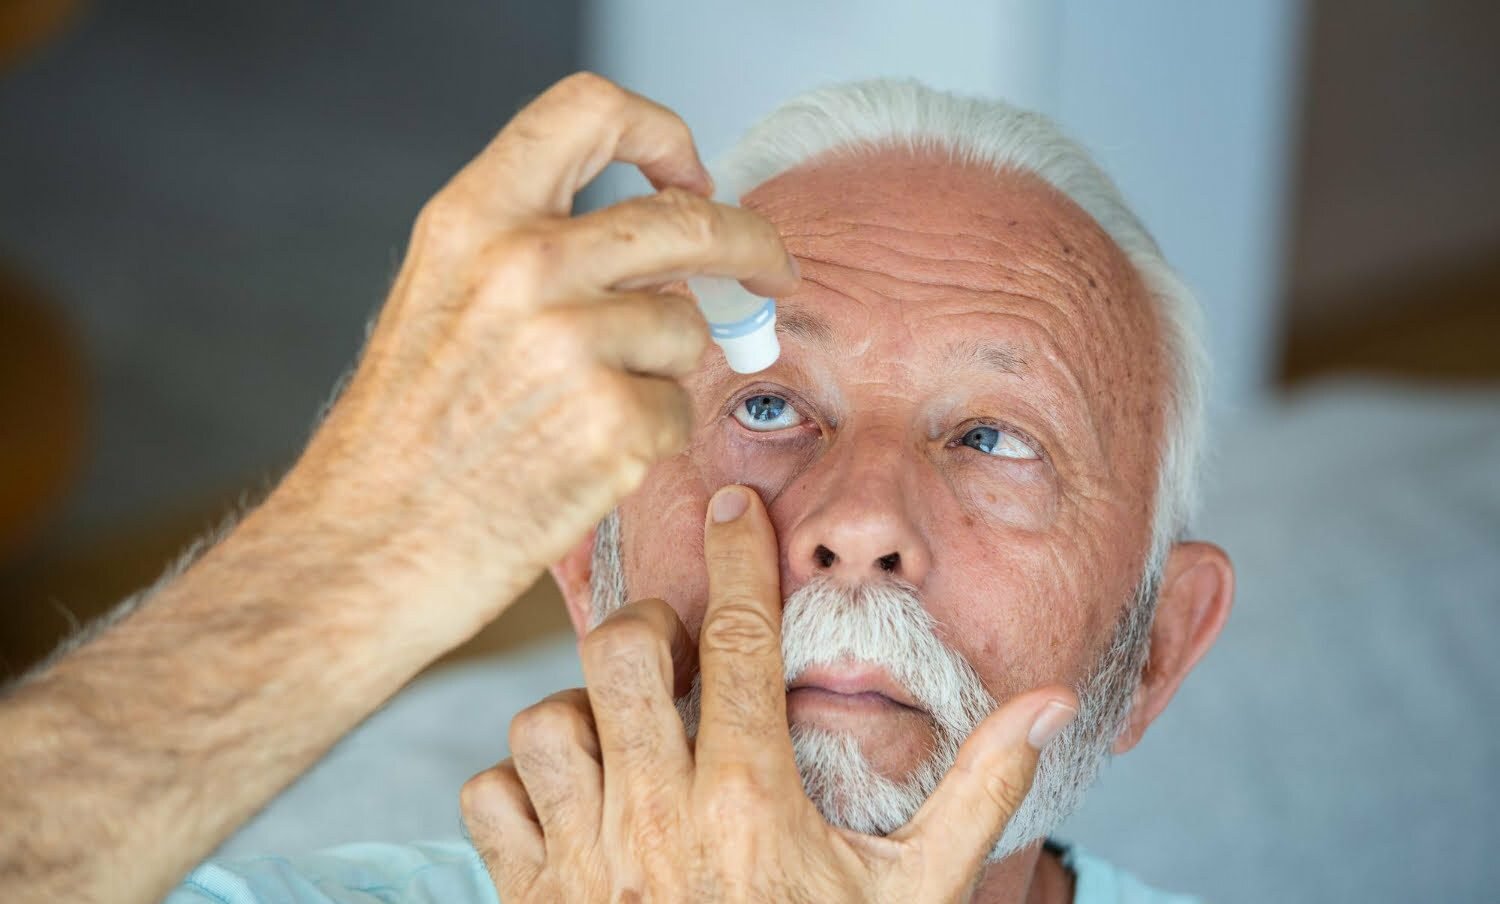 adulto mayor aplicando gotas en sus ojos para las cataratas | gotas para ojos contaminadas